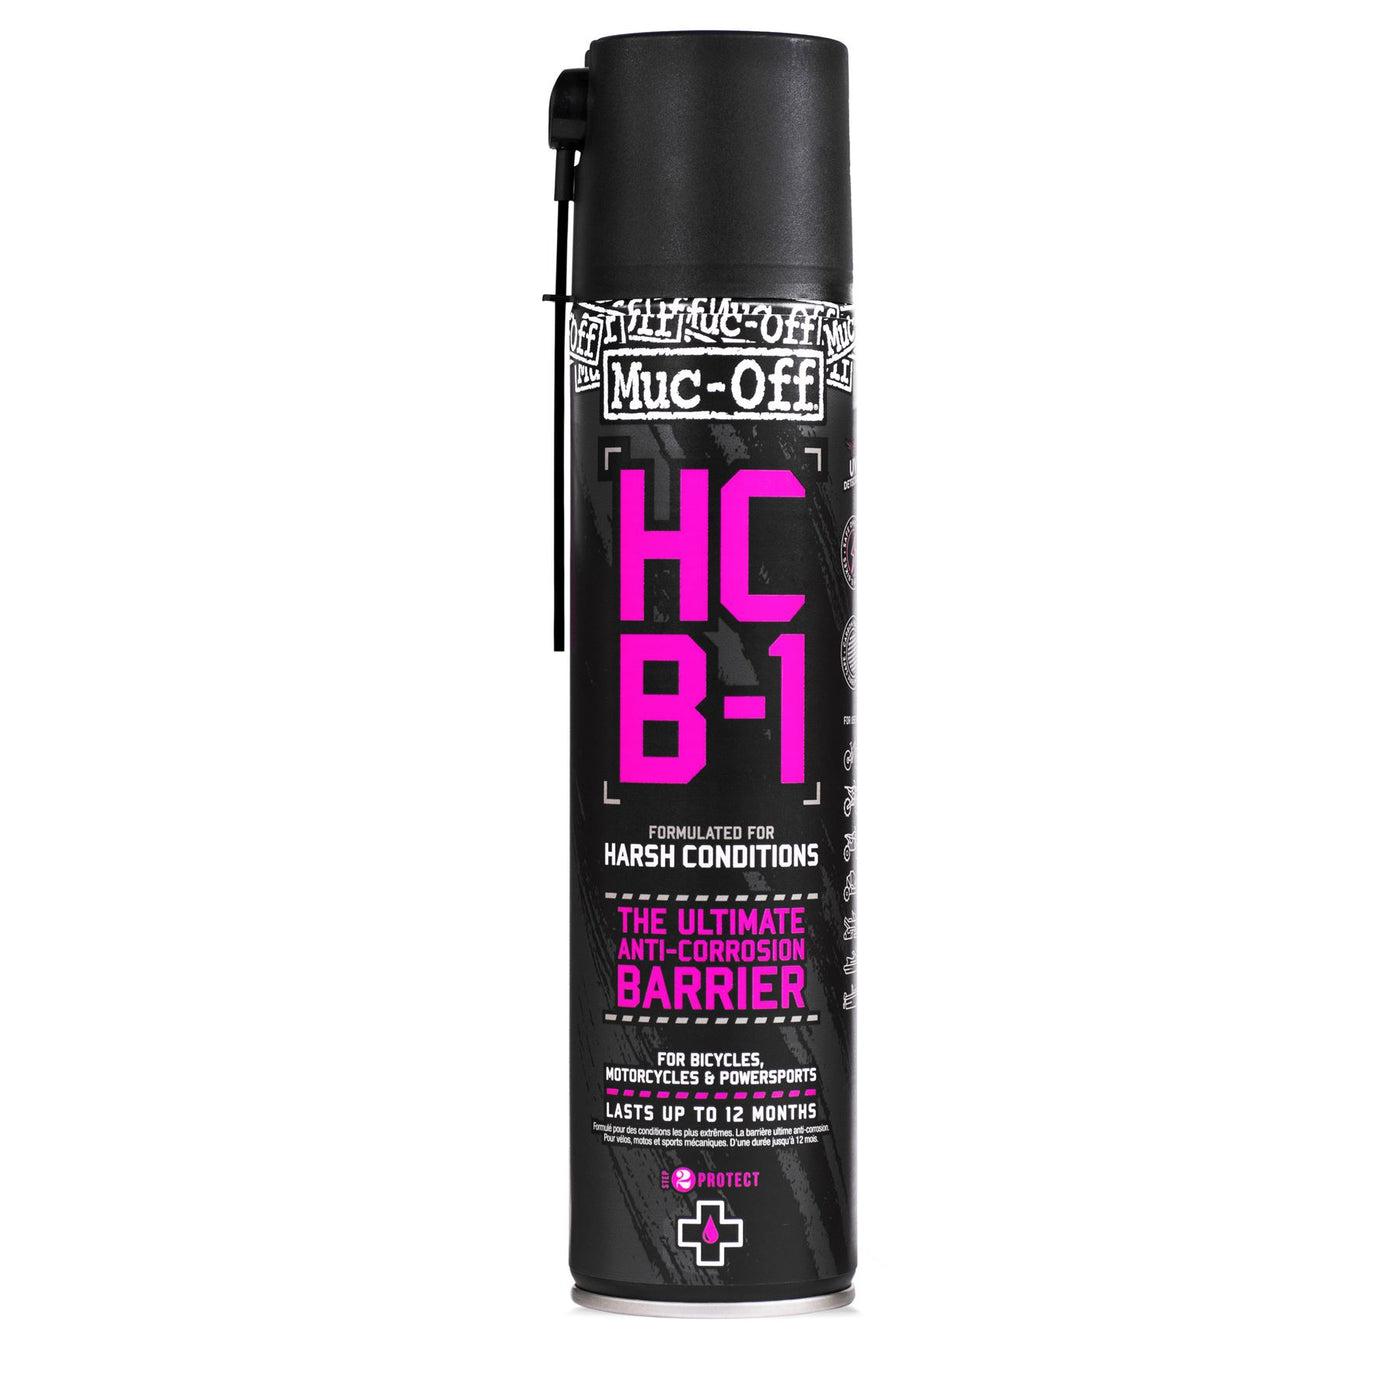 Muc-Off HCB-1 Anti-Corrosion Barrier Spray